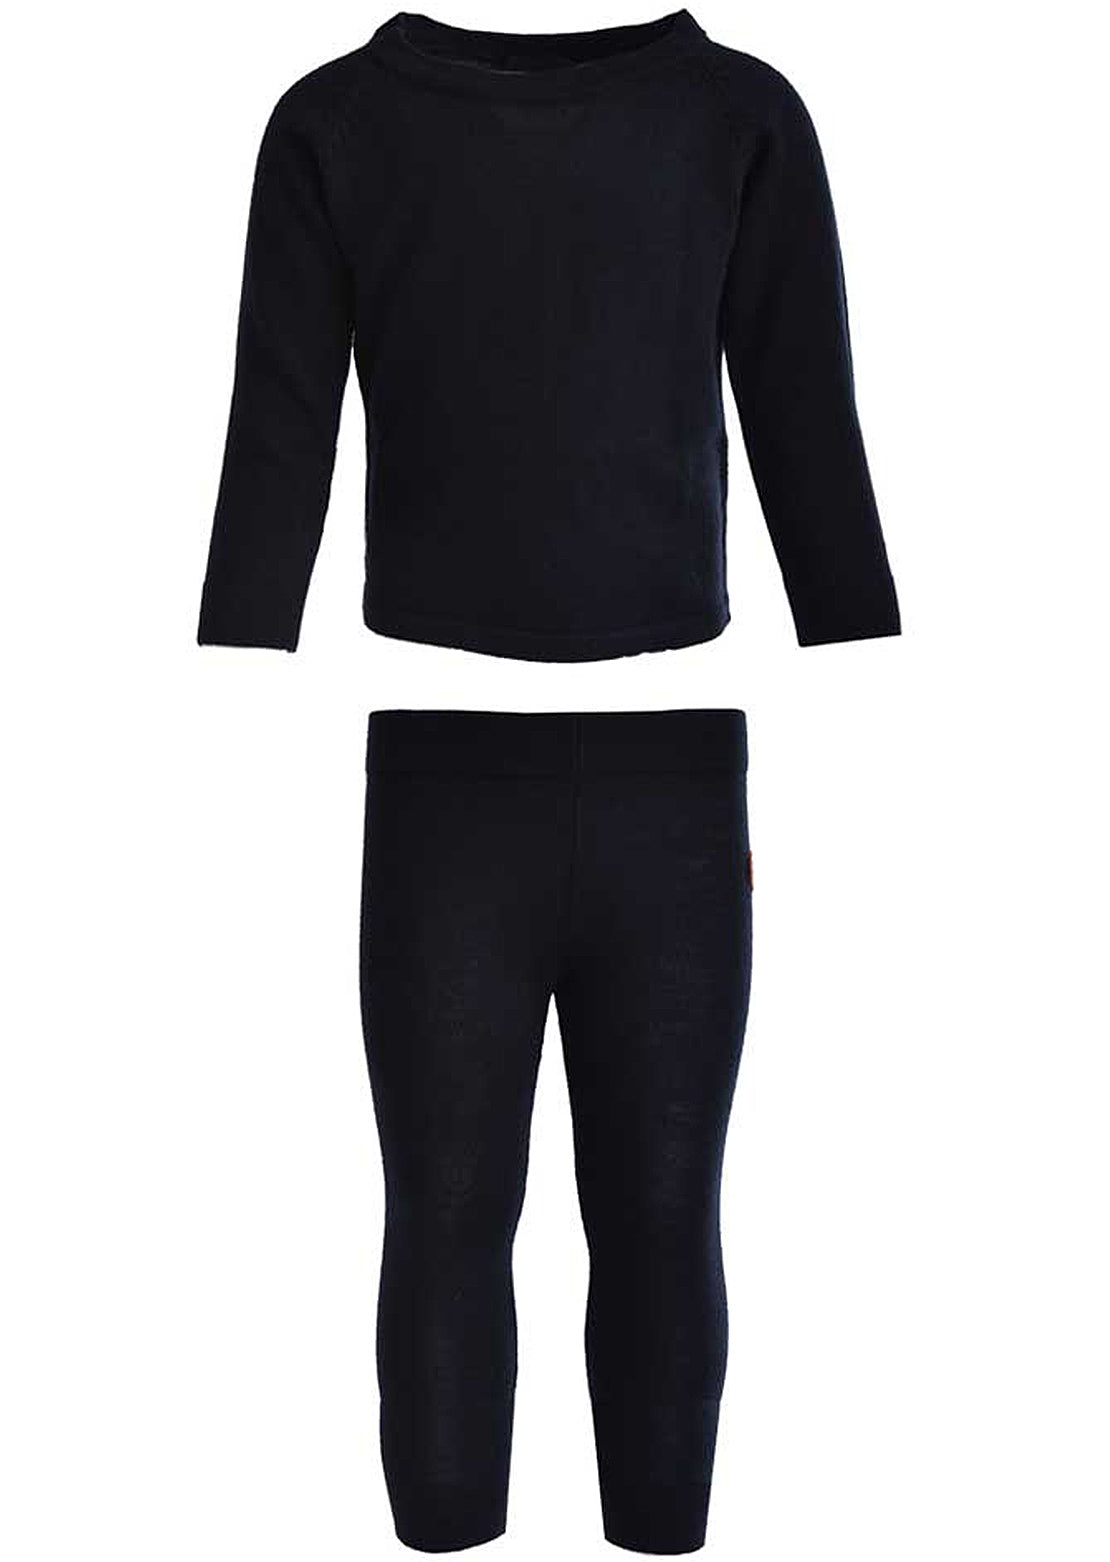 L&amp;P Toddler Merino Wool Thermal Underwear Set Black